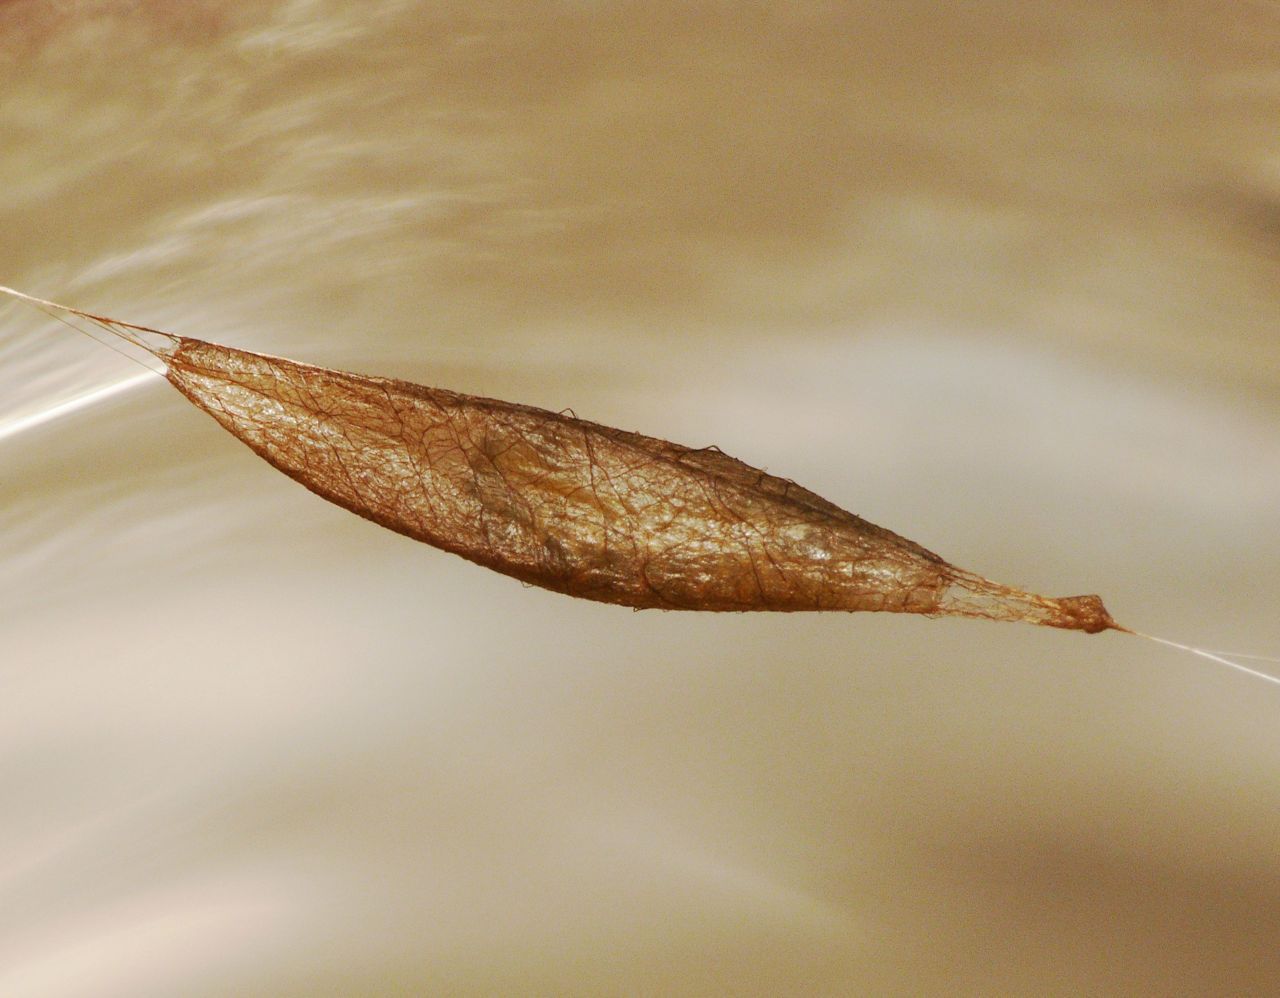 Cocon, perkamentachtig en vierkant in doorsnede, van de sluipwesp Acrodactyla quadrisculpta (foto: Dick Belgers)